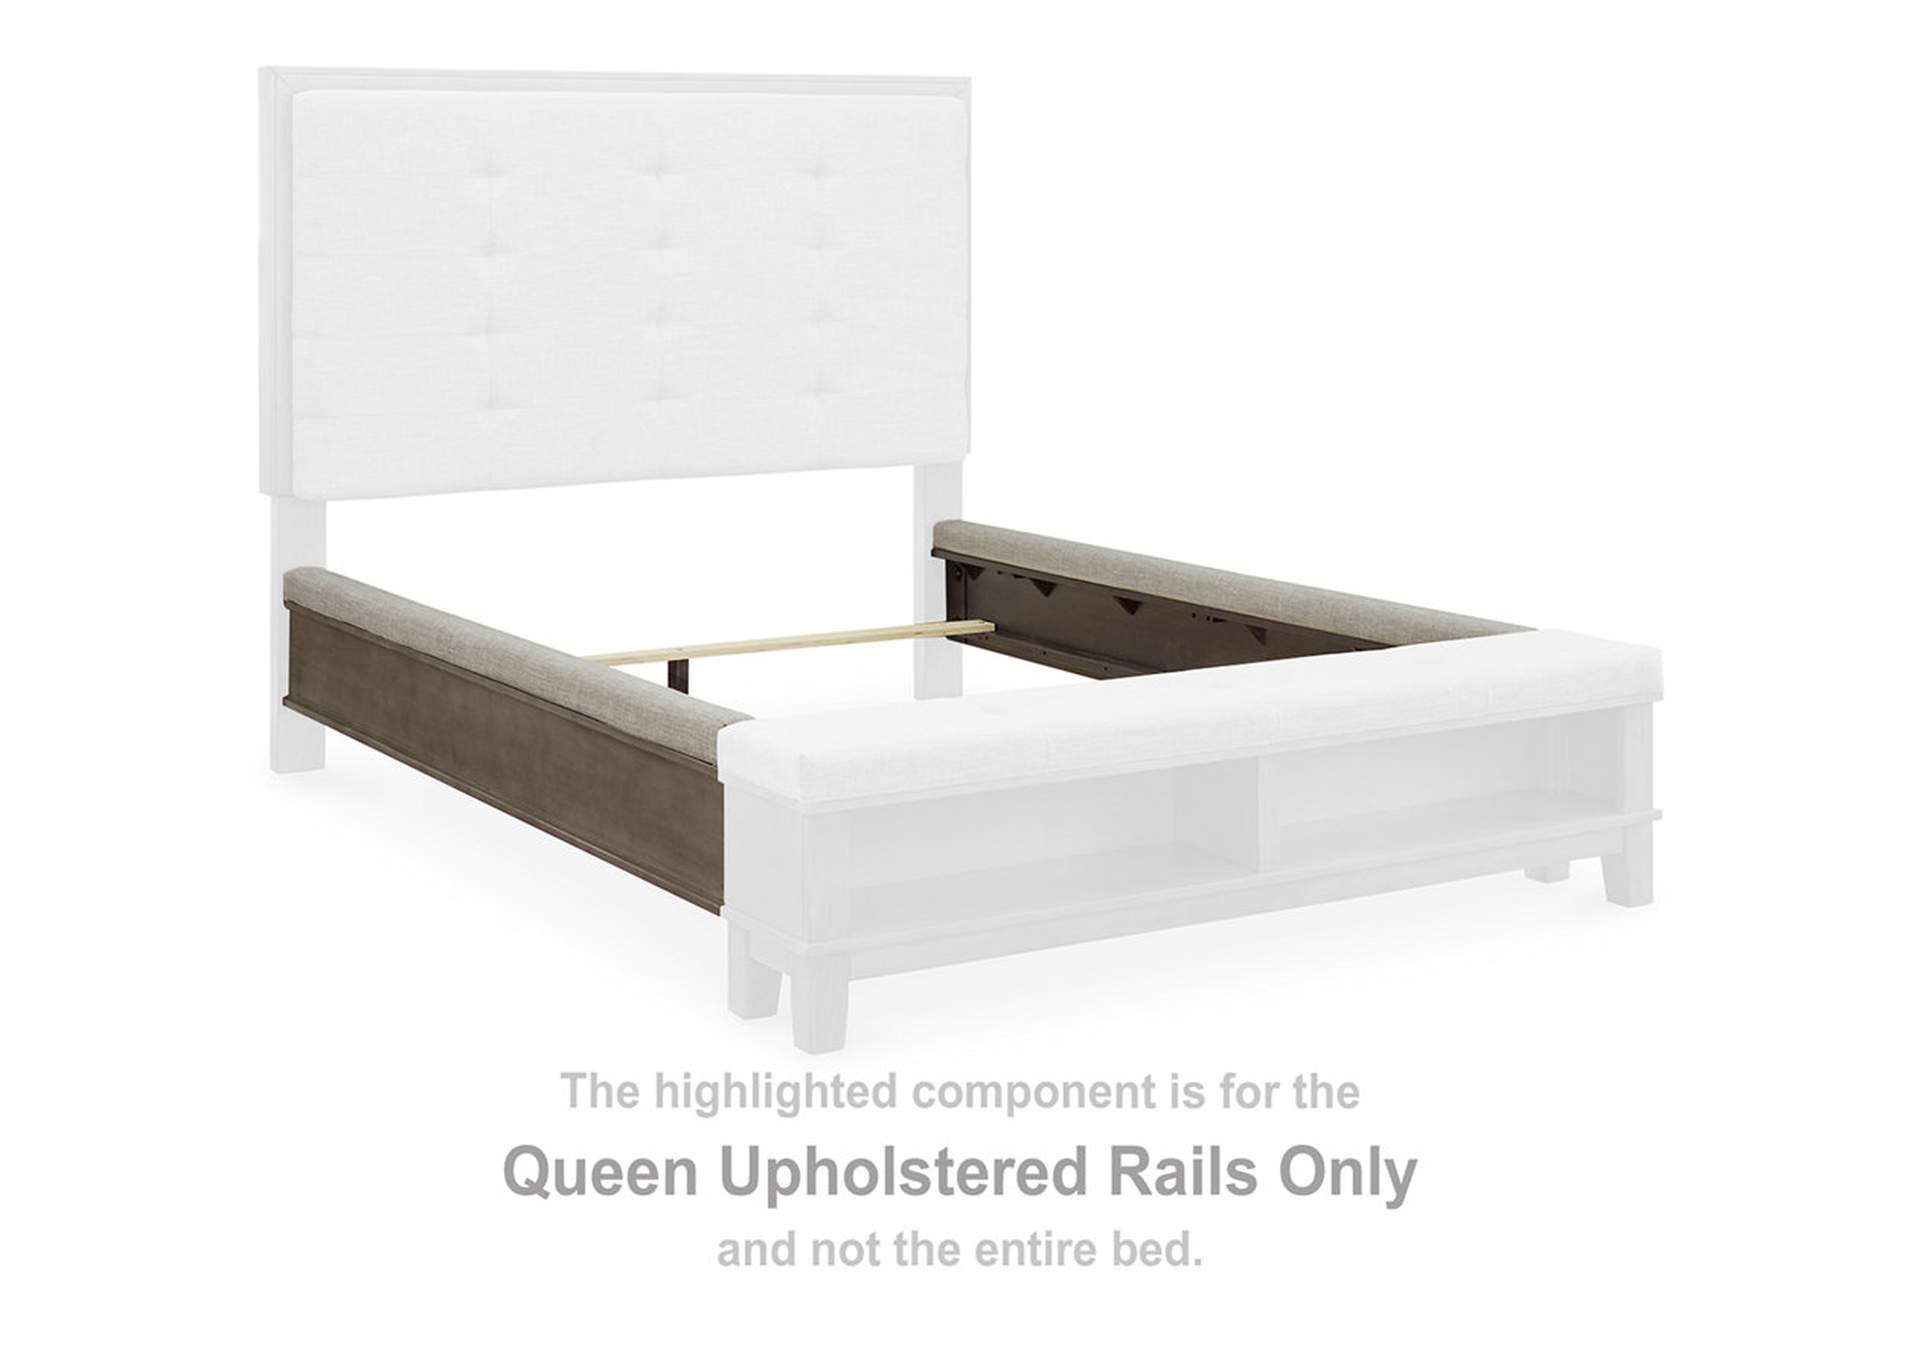 Hallanden Queen Upholstered Storage Bed, Dresser, Mirror, Chest and Nightstand,Benchcraft